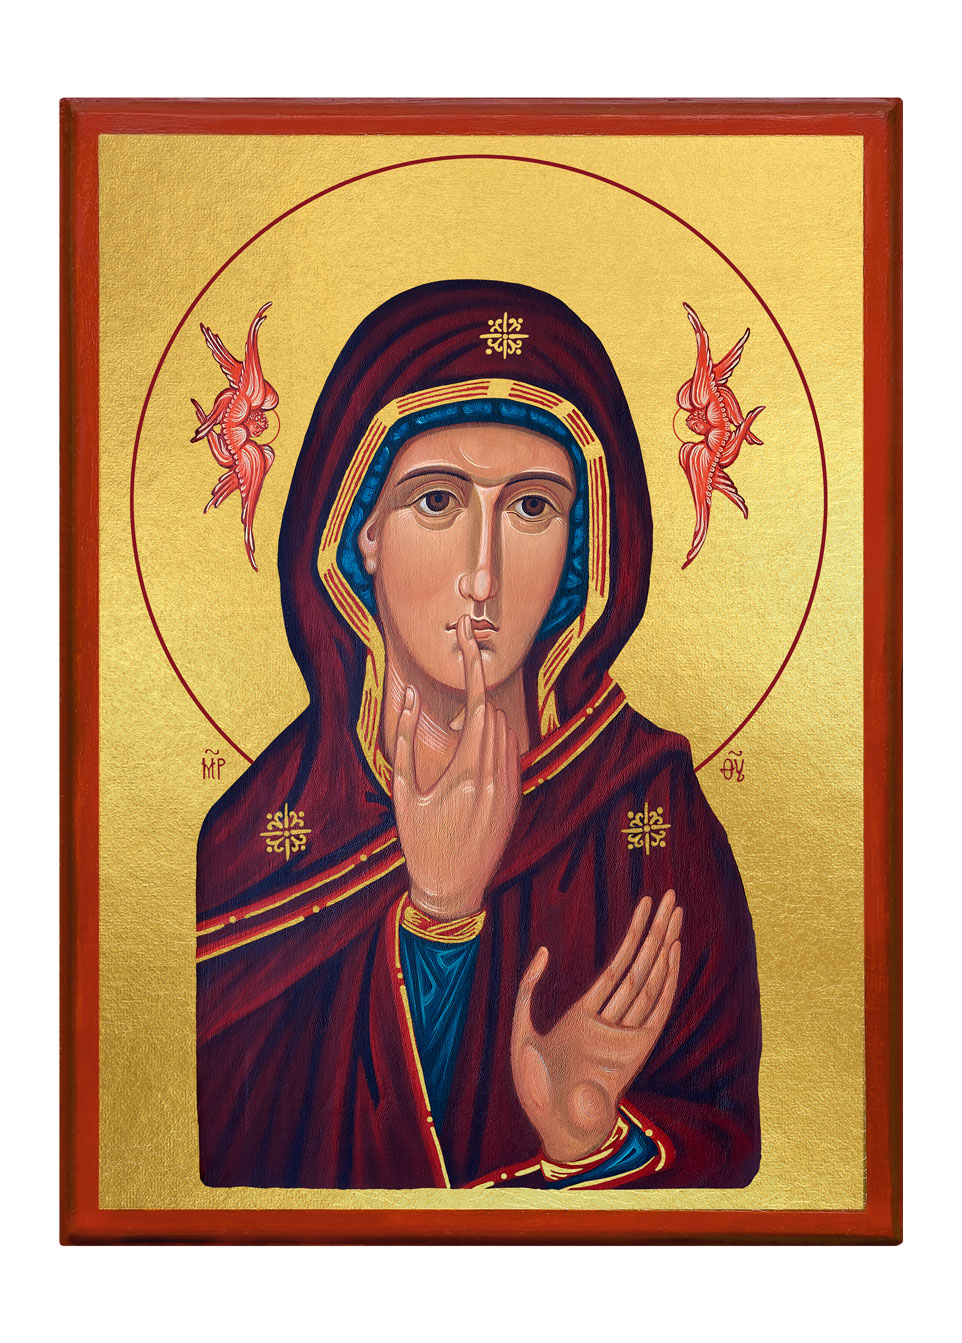 Matka Boża Milcząca - Ikona religijna